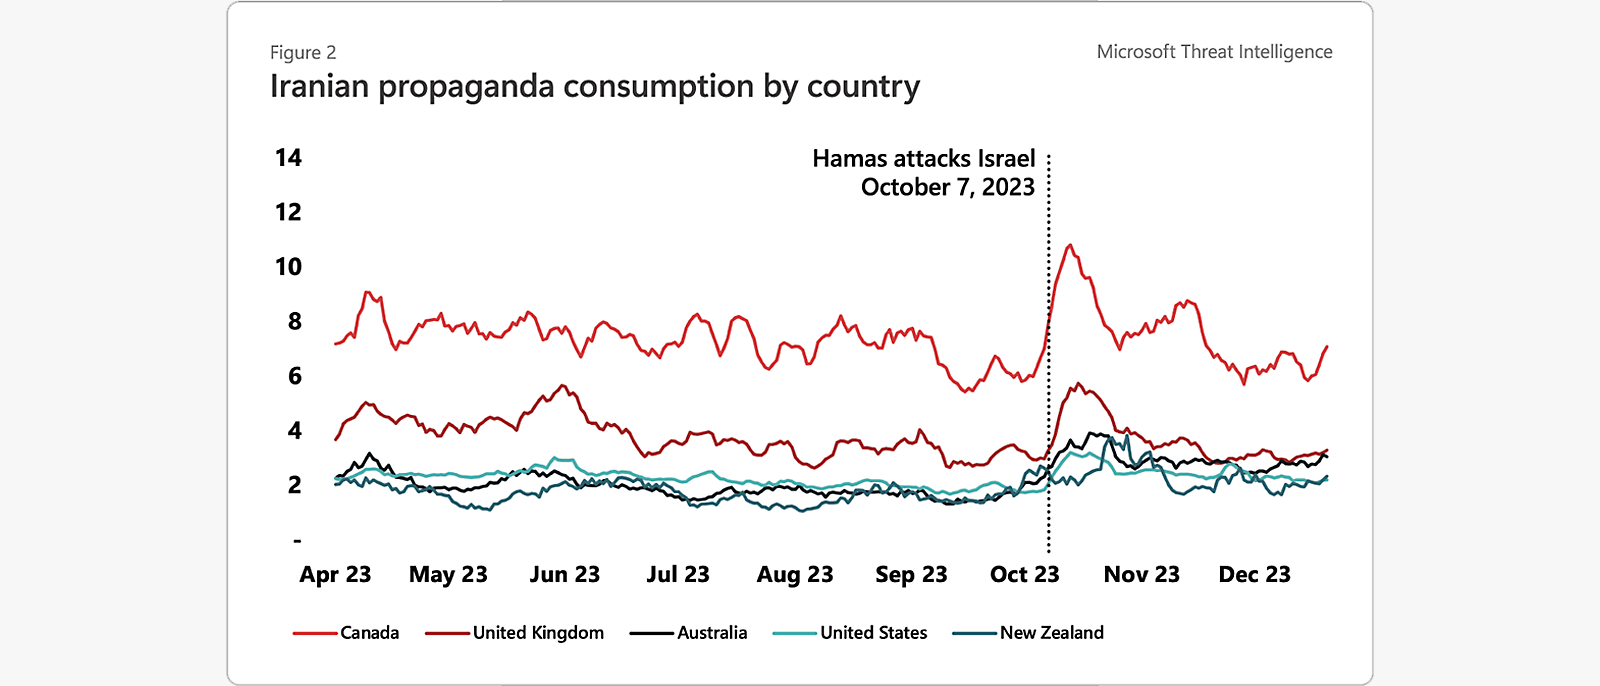 Figura 2: Informações sobre Ameaças da Microsoft – Consumo da propaganda iraniana por país, ataques do Hamas a Israel. Gráfico que mostra atividade, de abril a dezembro de 2023.